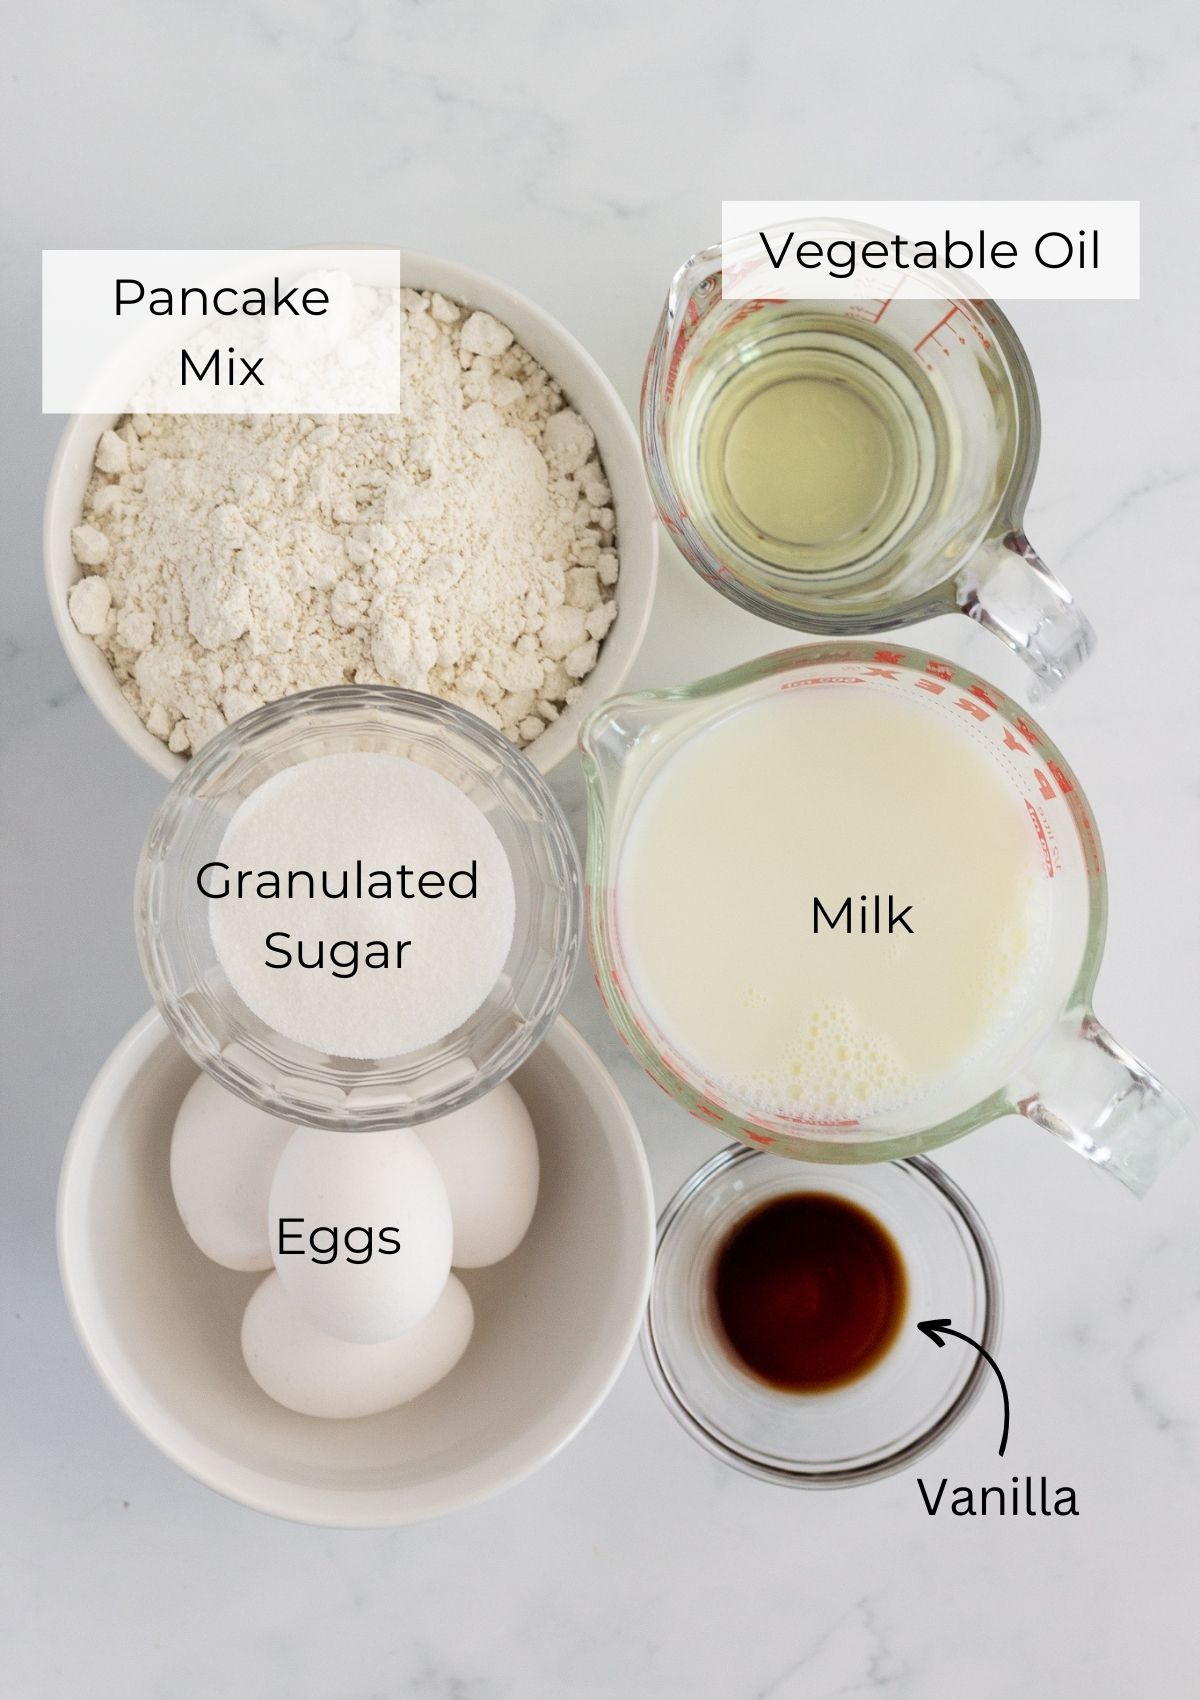 The ingredients needed to make sheet pan pancakes.